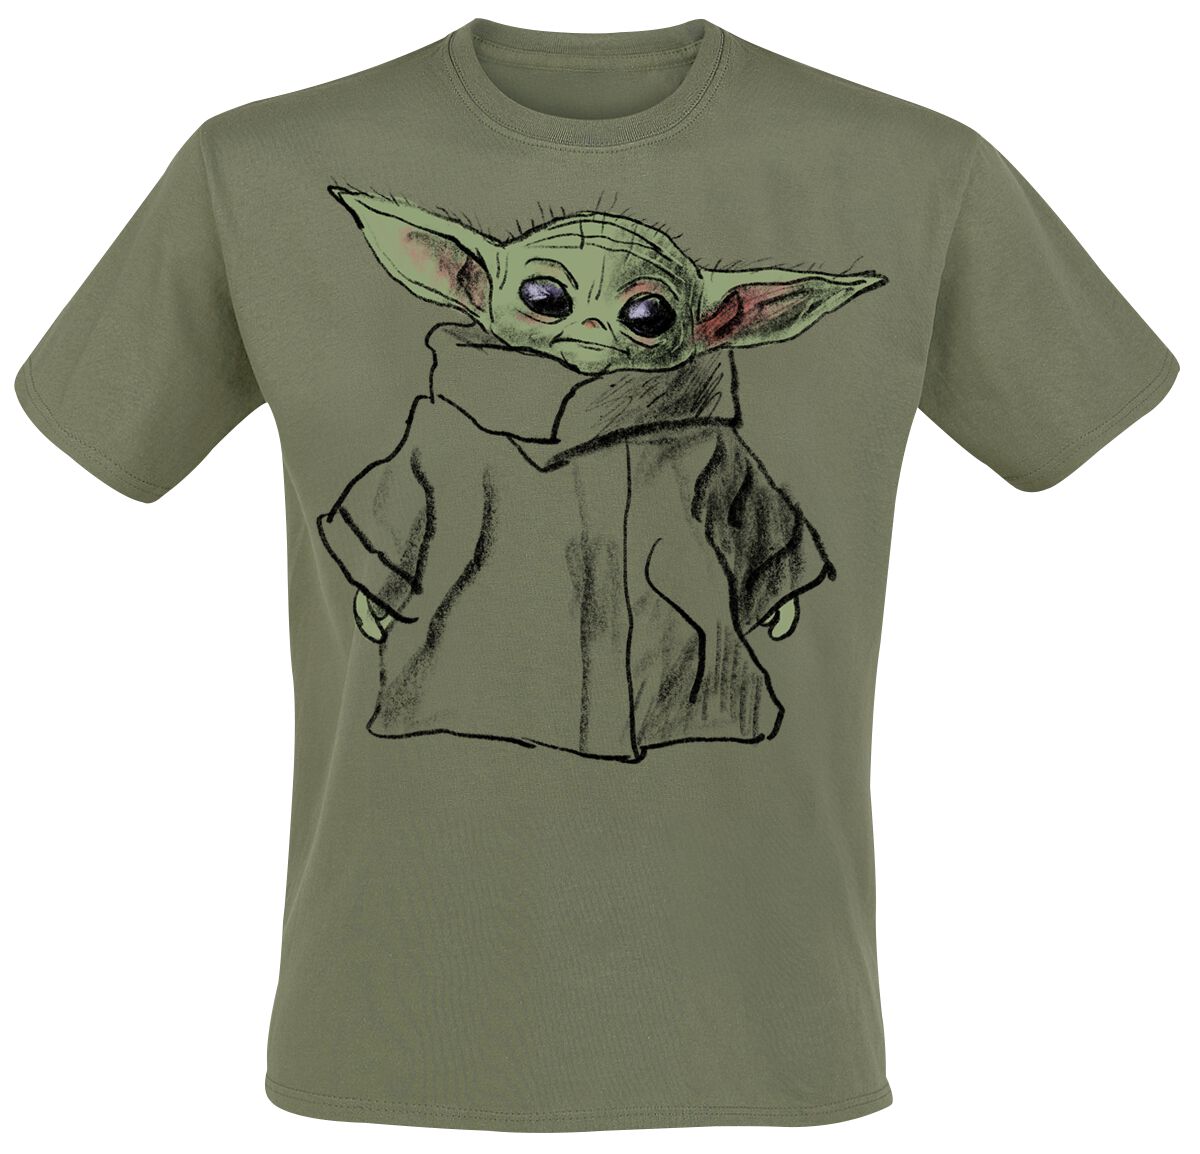 Star Wars T-Shirt - The Mandalorian - Grogu - Sketch - S bis XXL - für Männer - Größe XXL - grün  - EMP exklusives Merchandise!